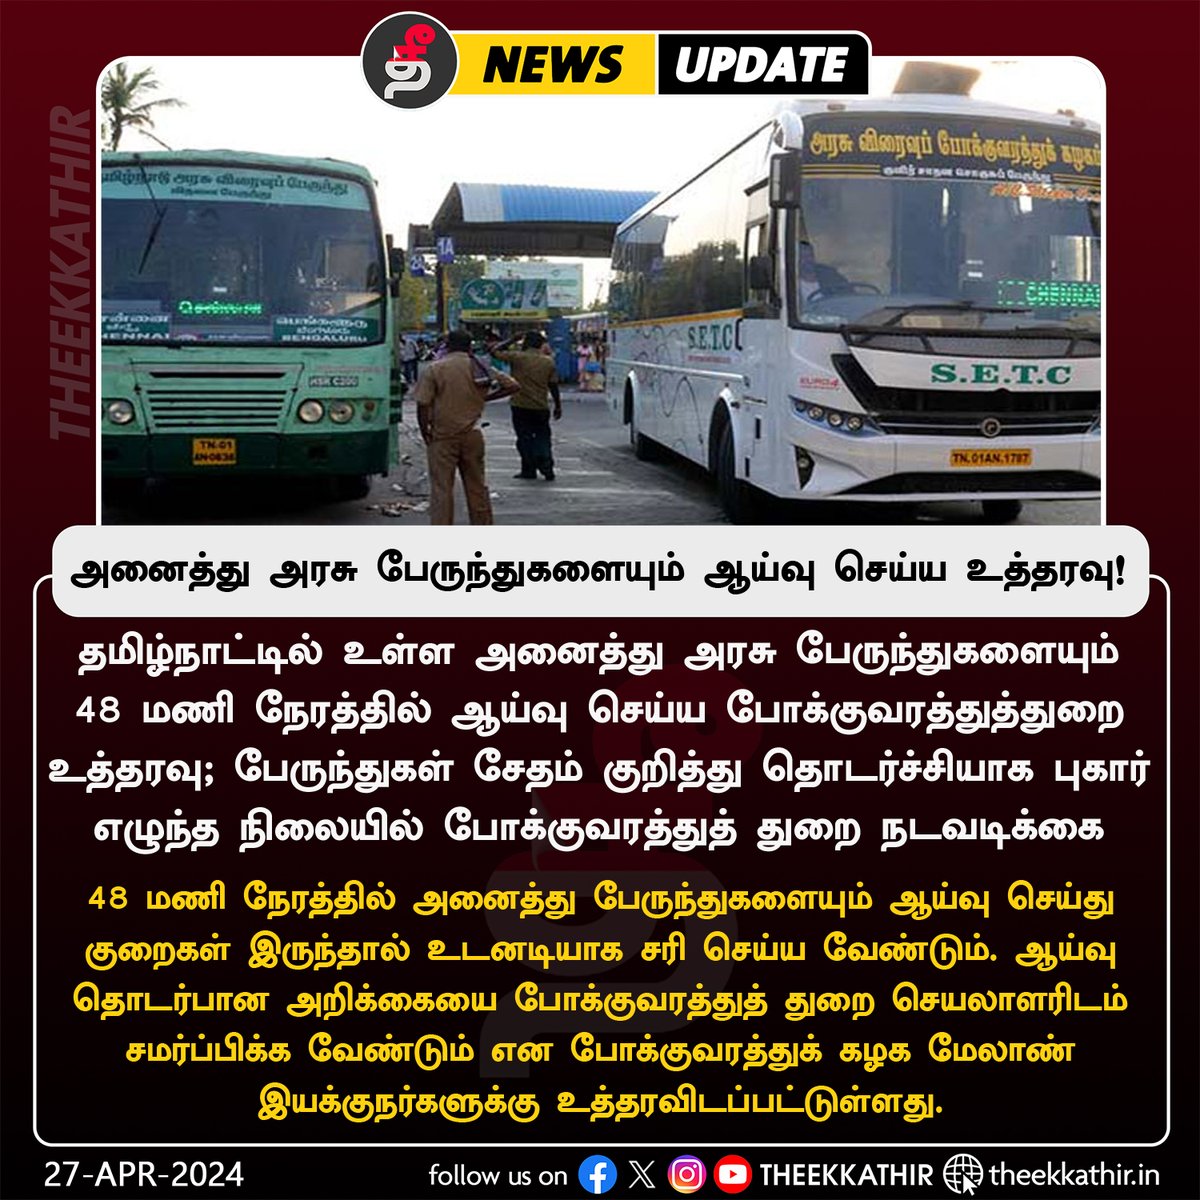 48 மணி நேரத்தில் தமிழ்நாட்டில் உள்ள அனைத்து பேருந்துகளையும் ஆய்வு செய்ய உத்தரவு! #Theekkathir | #Tamilnadu | #Govtbus | #Transport